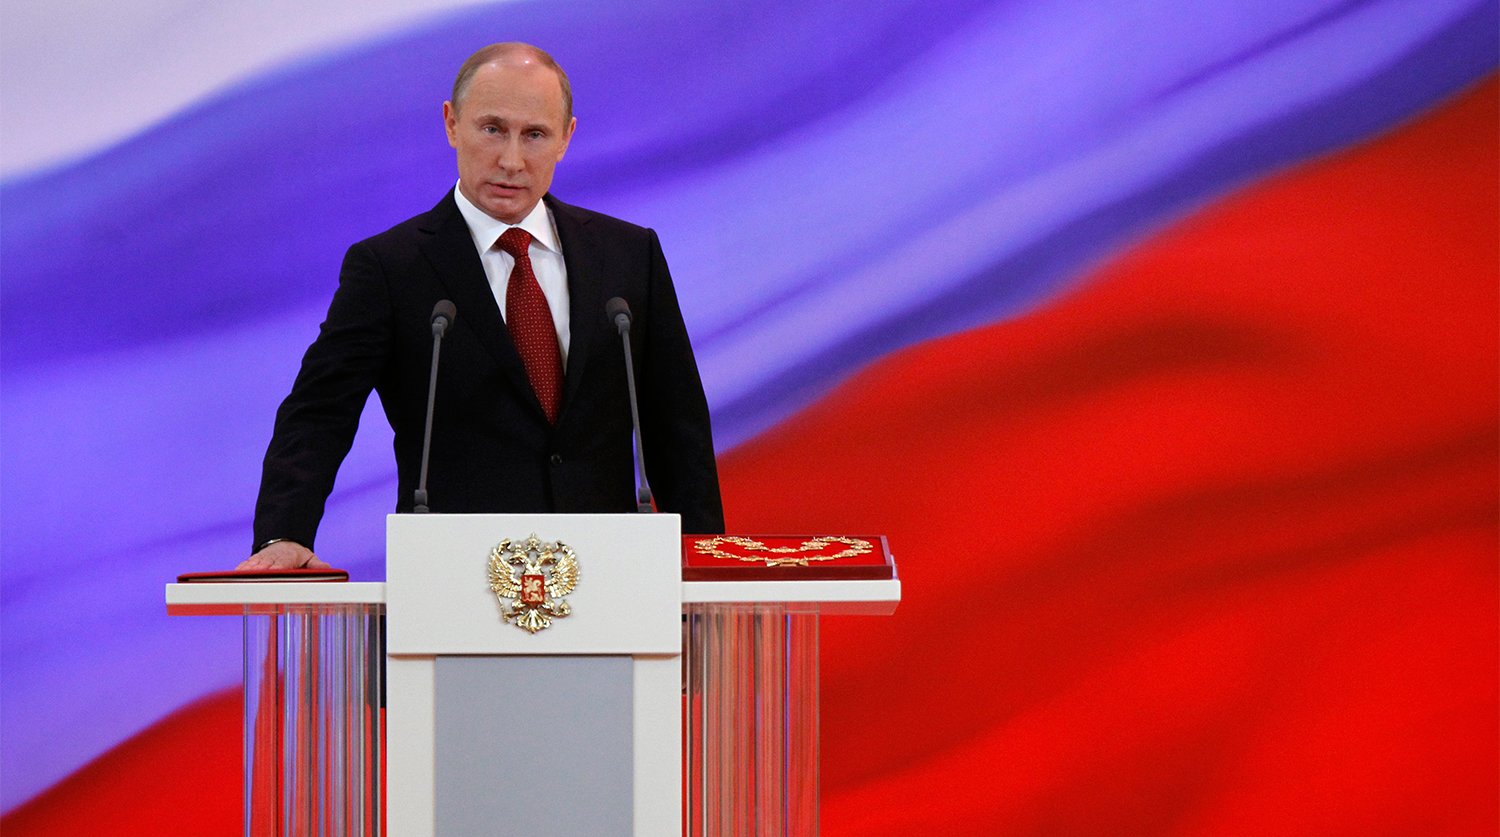 Почему Путин торопит конституционную реформу?